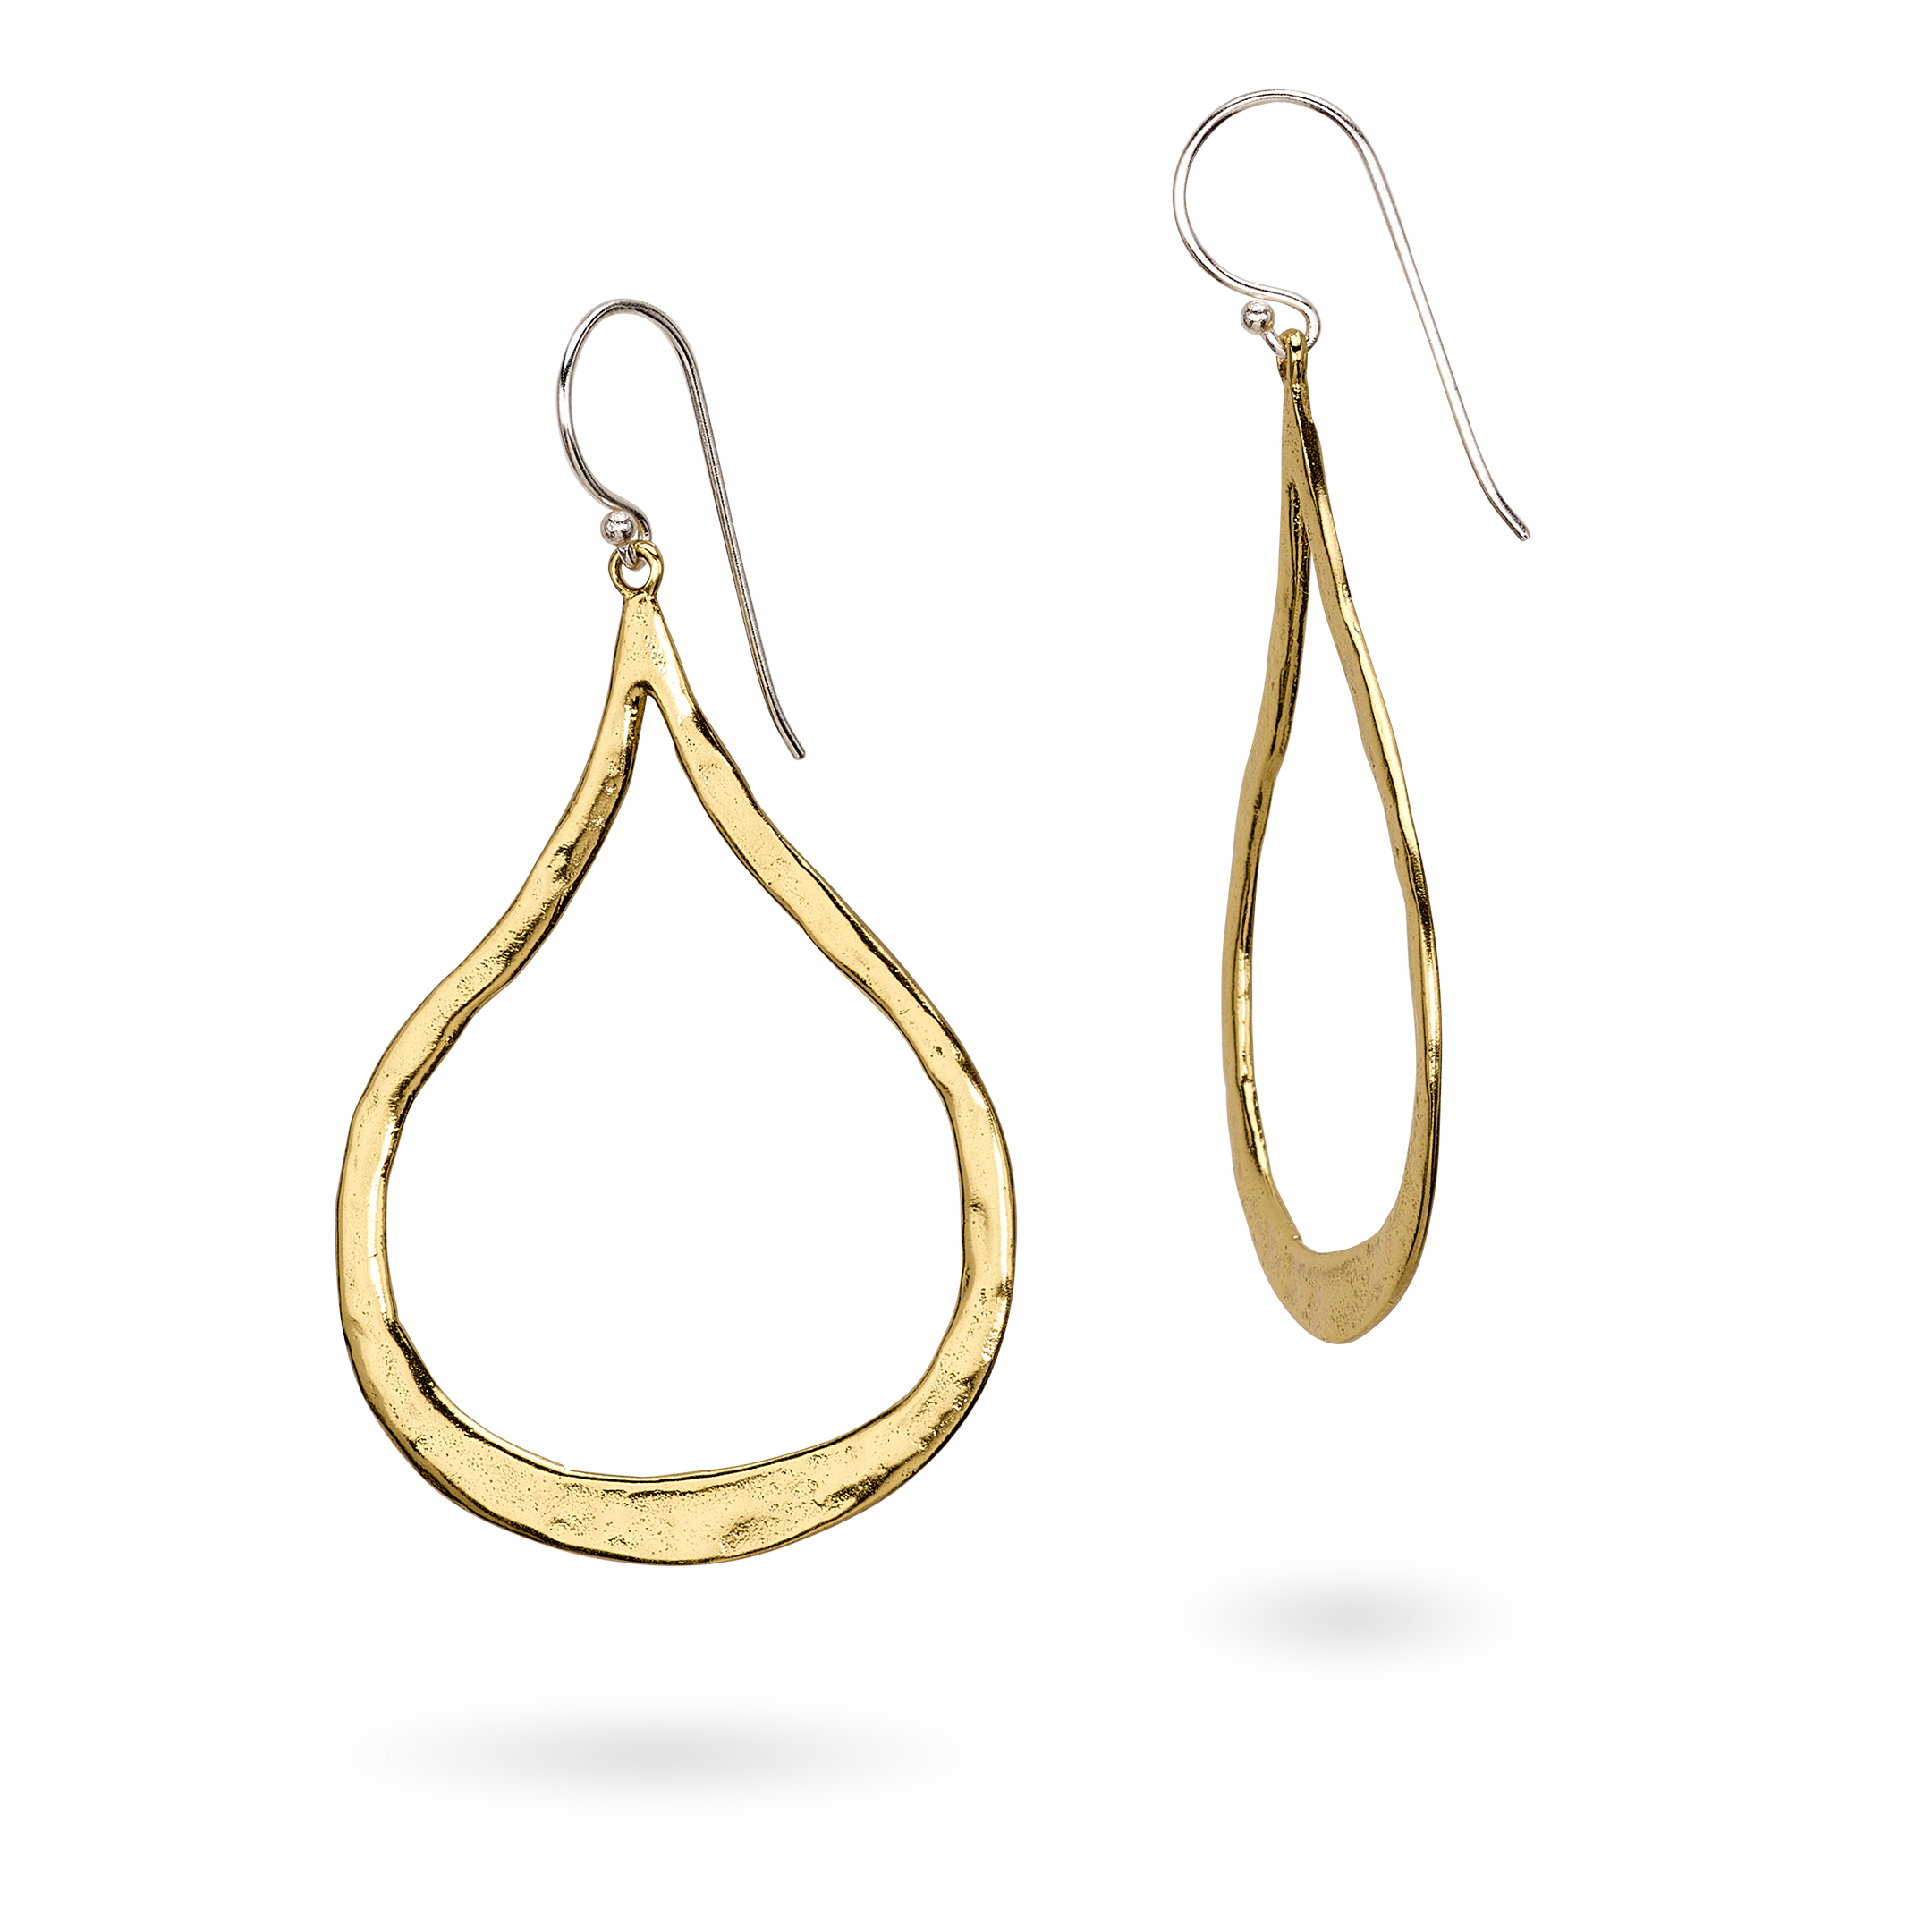 Swoon Earrings Ceramic Coated Brass